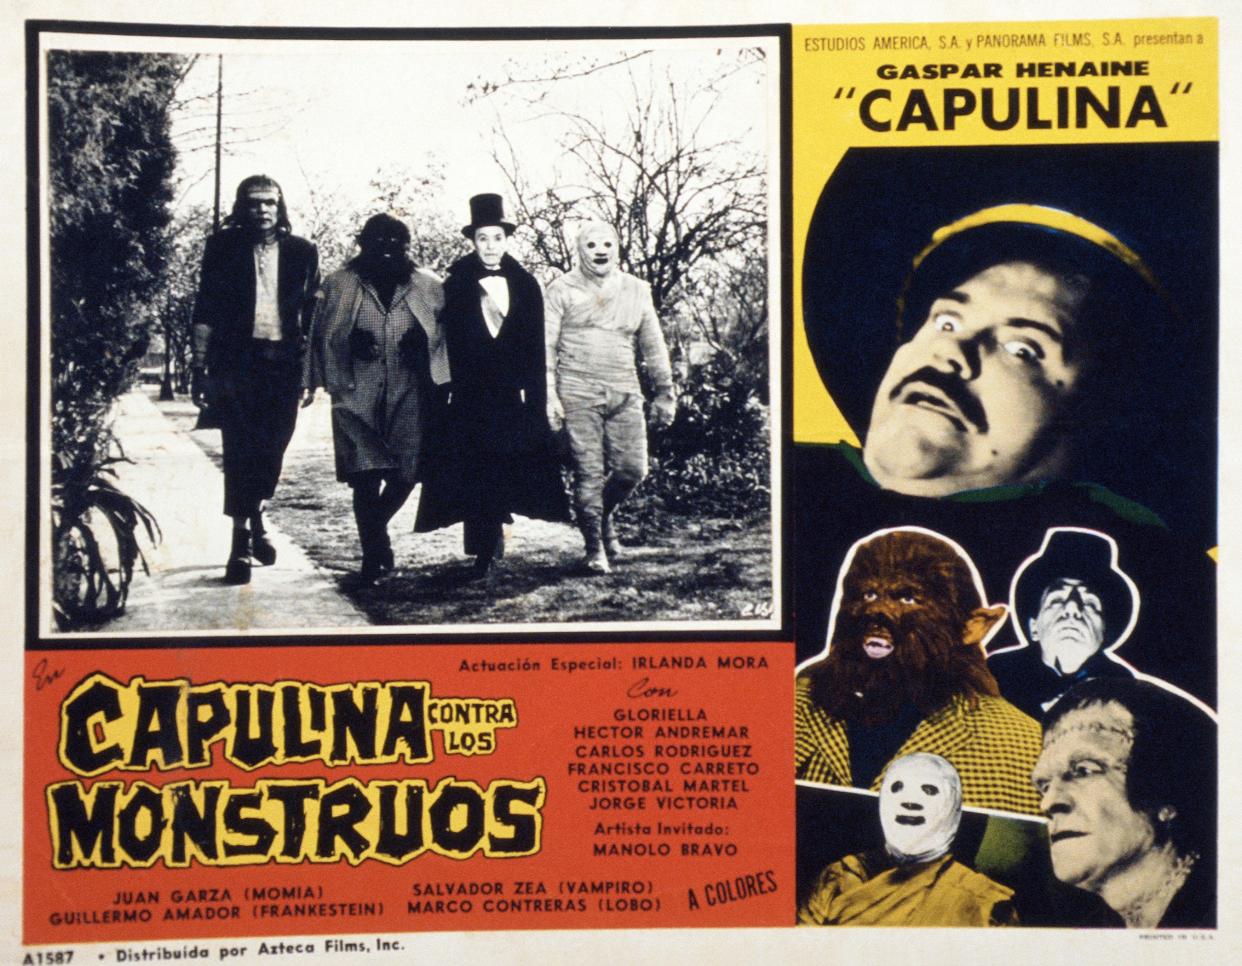 El inicio de la carrera en solitario de Gaspar Henaine en el cine fue un factor para la separación de Viruta y Capulina.  (Photo by LMPC via Getty Images)